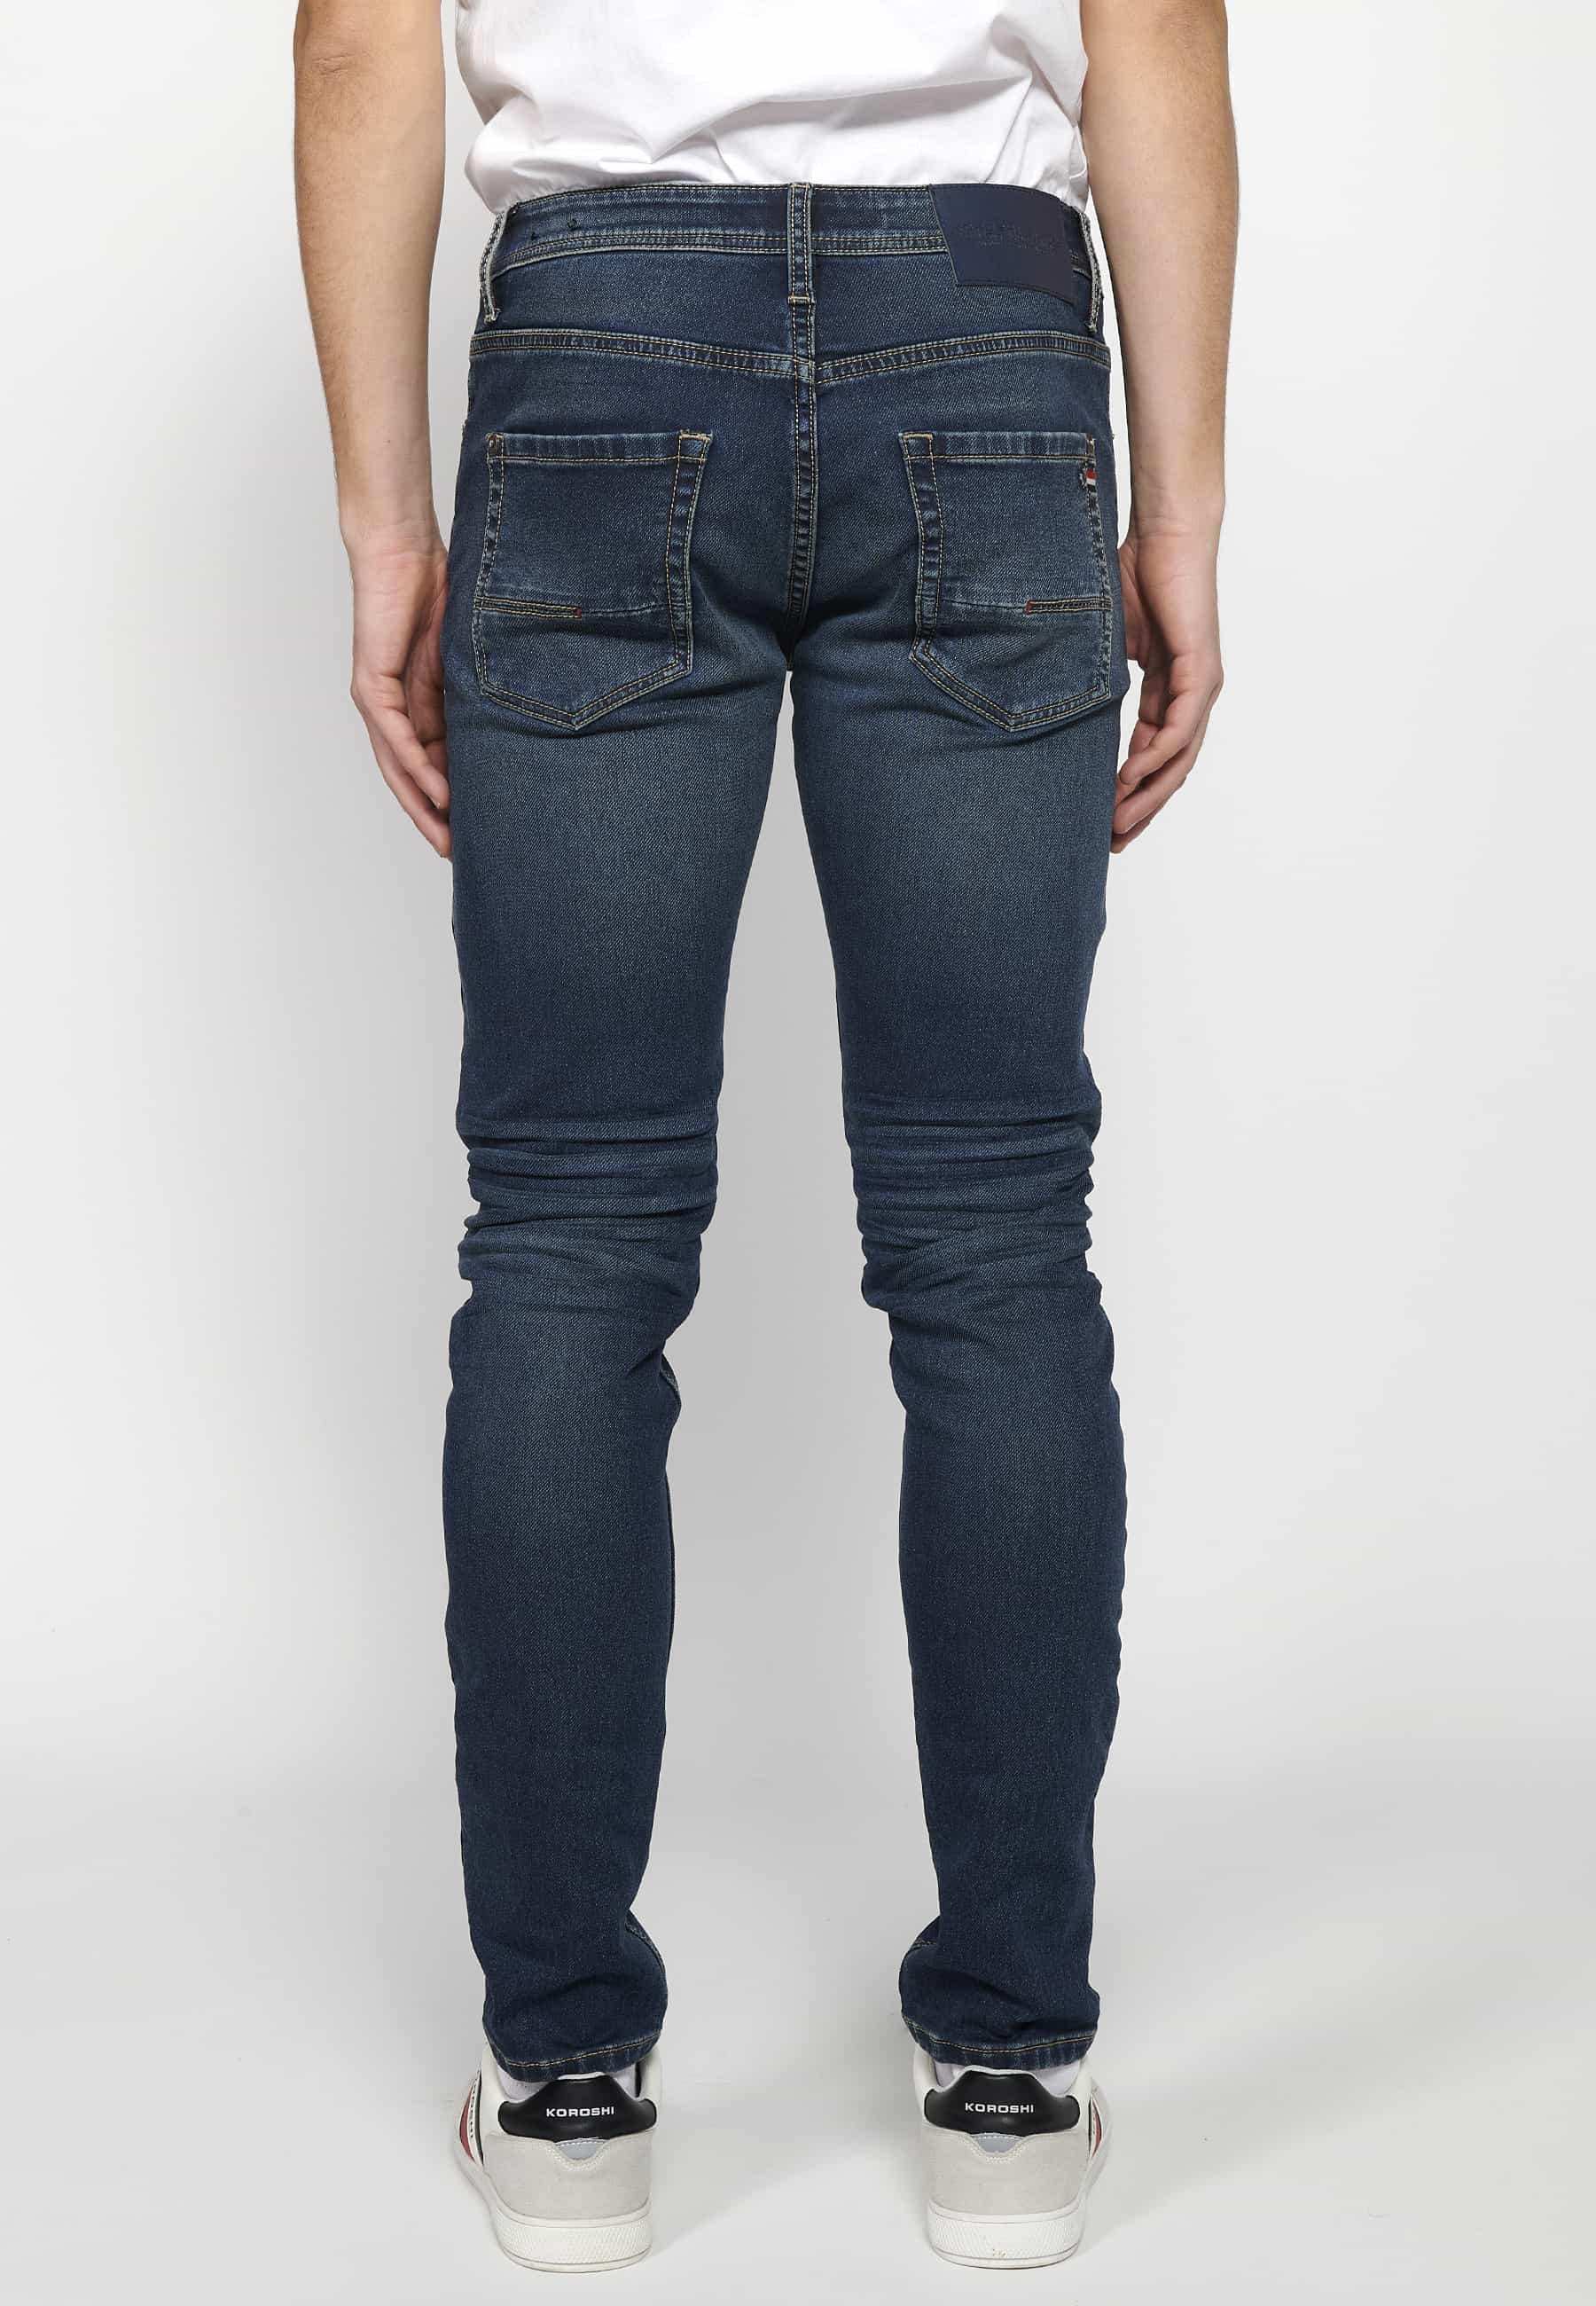 Pantalons llargs Jeans slim fit amb Tancament davanter amb cremallera i botó amb Cinc butxaques, un ceriller de Color Blau per a Home 2